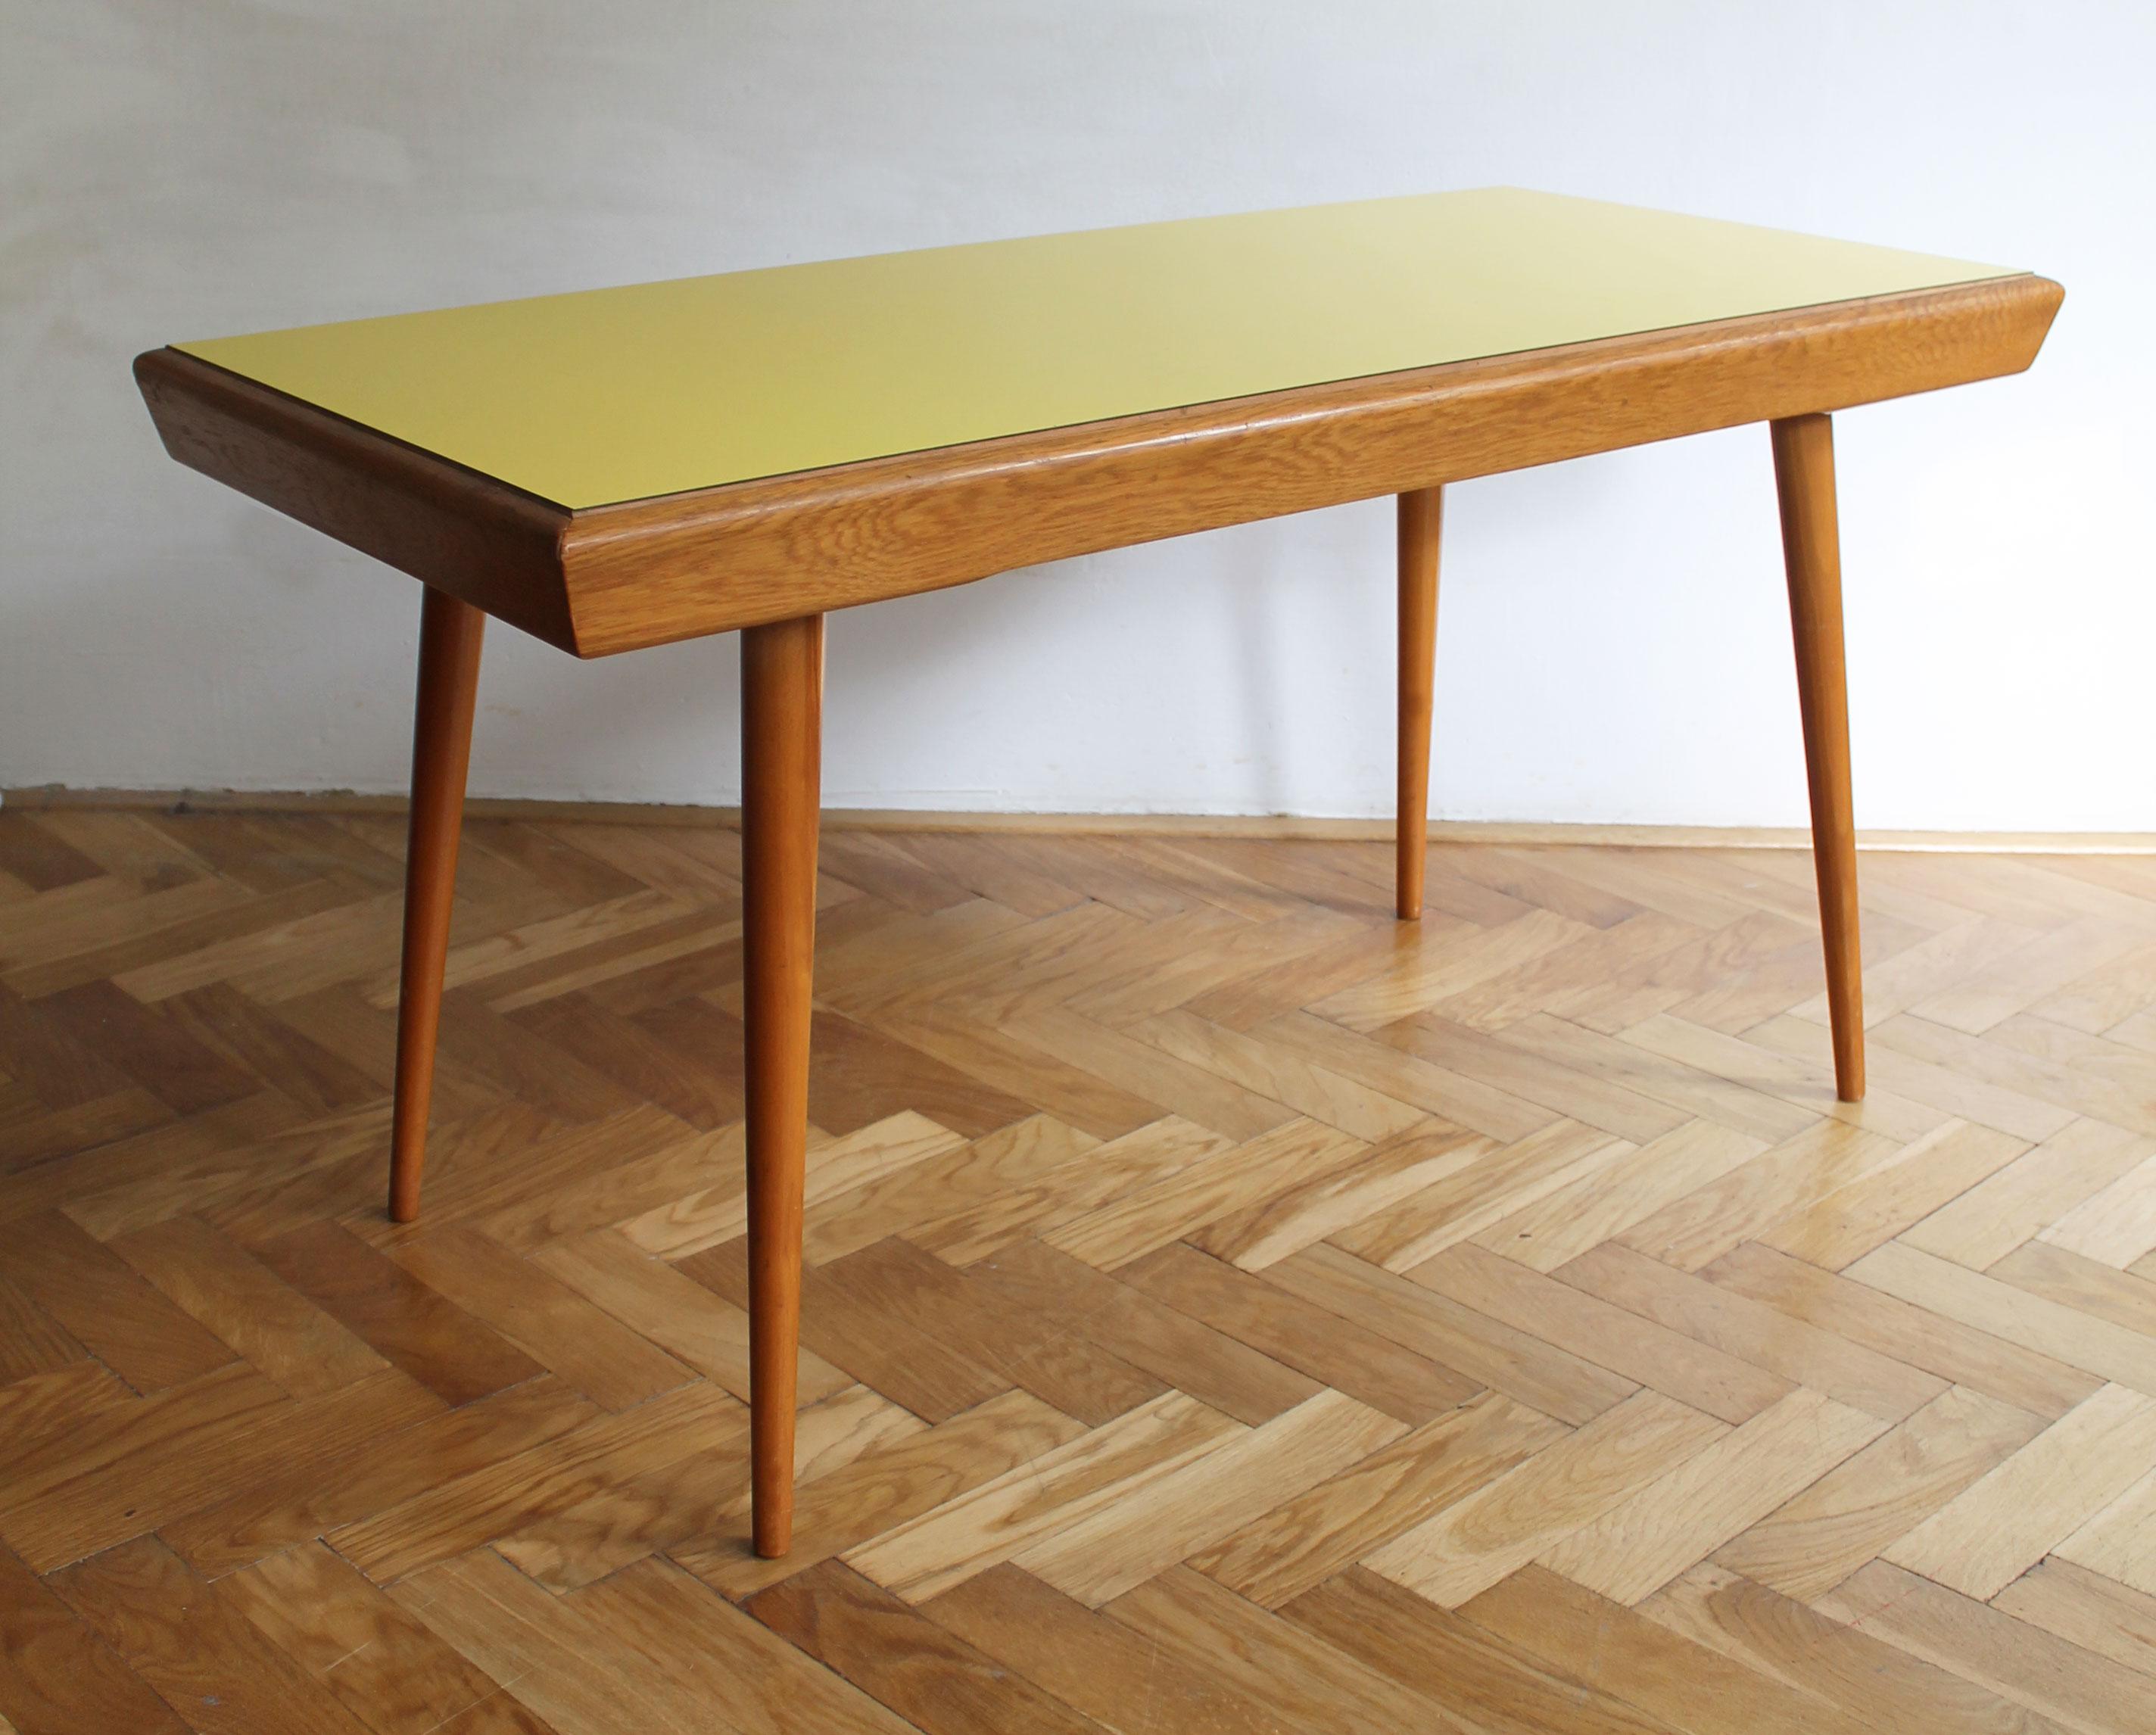 Un autre classique du design tchèque des années 1960.

Cette table basse a été créée par le célèbre designer de meubles tchèque Jiri Jiroutek (1928-2023) et a été produite par Interi Praha dans les années 1960. La table a été conçue avec un plateau